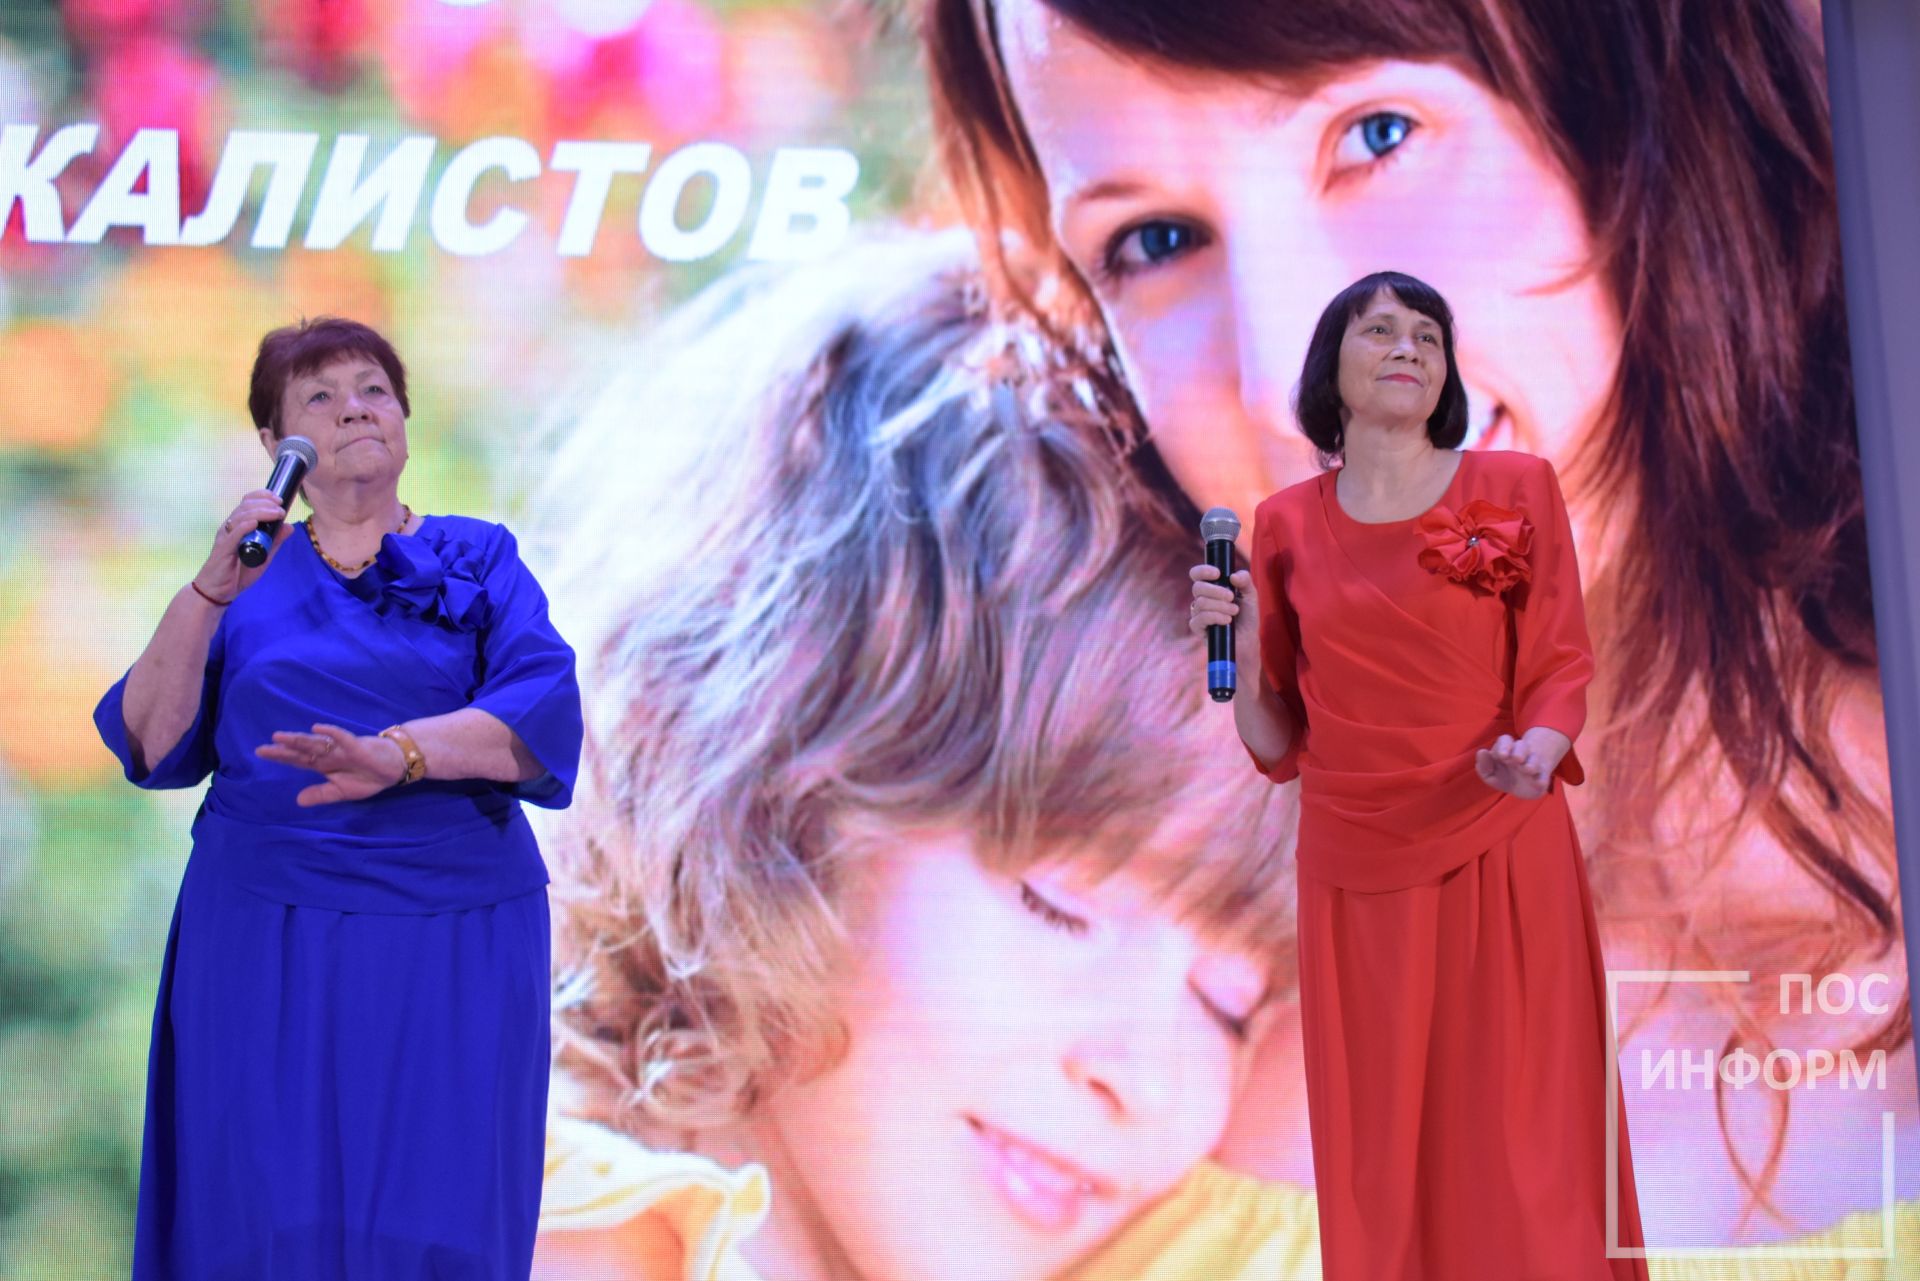 В Камских Полянах состоялся районный фестиваль-конкурс «Тепло сердец для милых мам», посвященный Дню матери